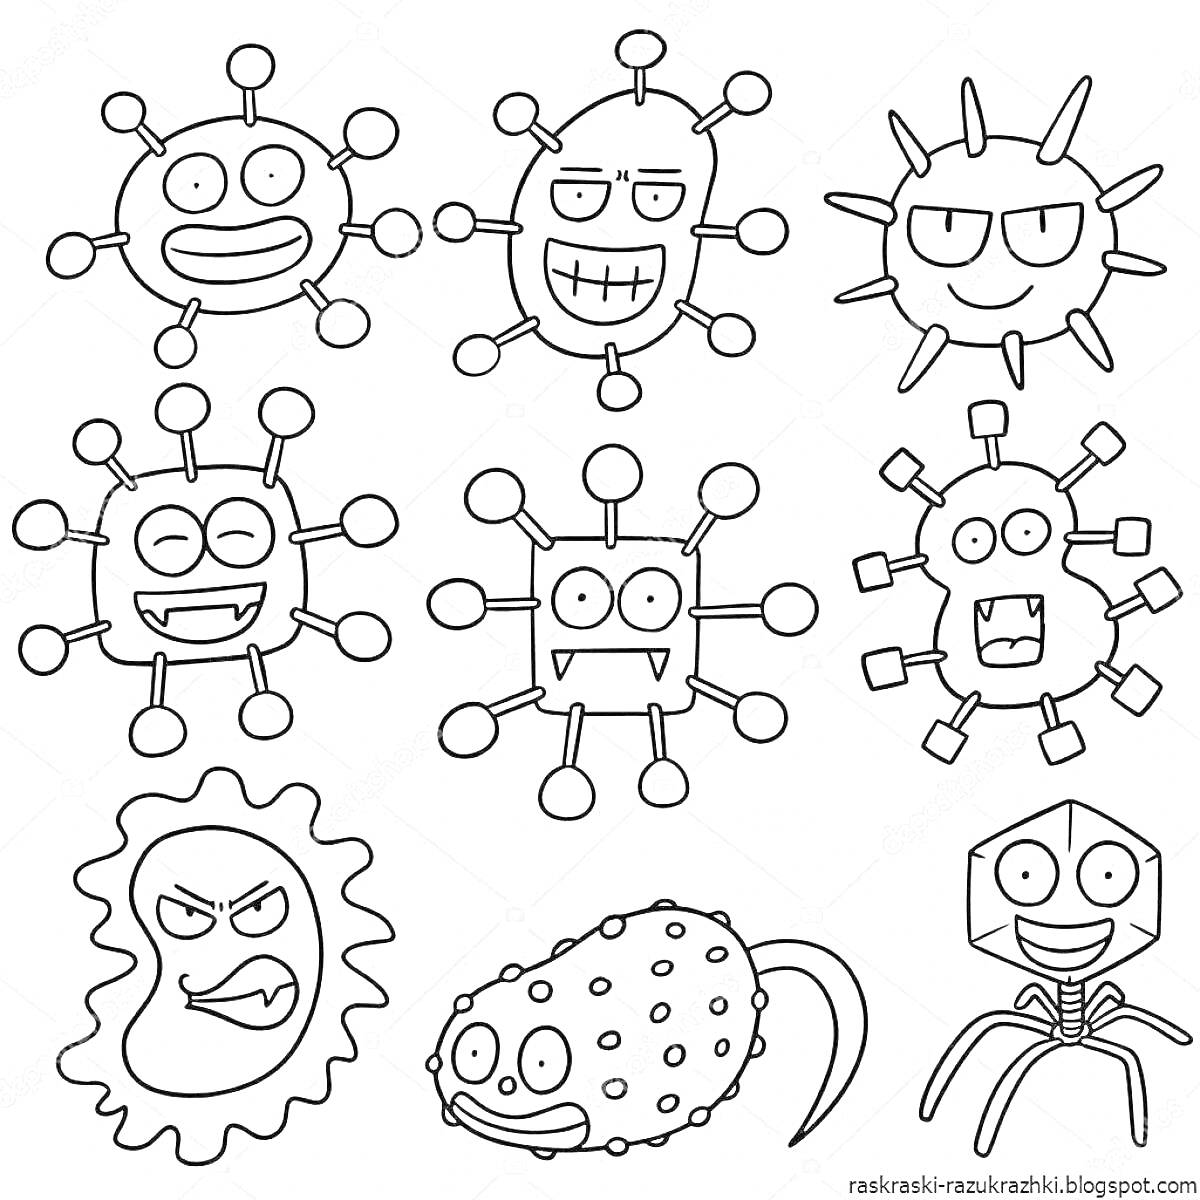 Раскраска Разнообразные забавные микробы с глазами и руками